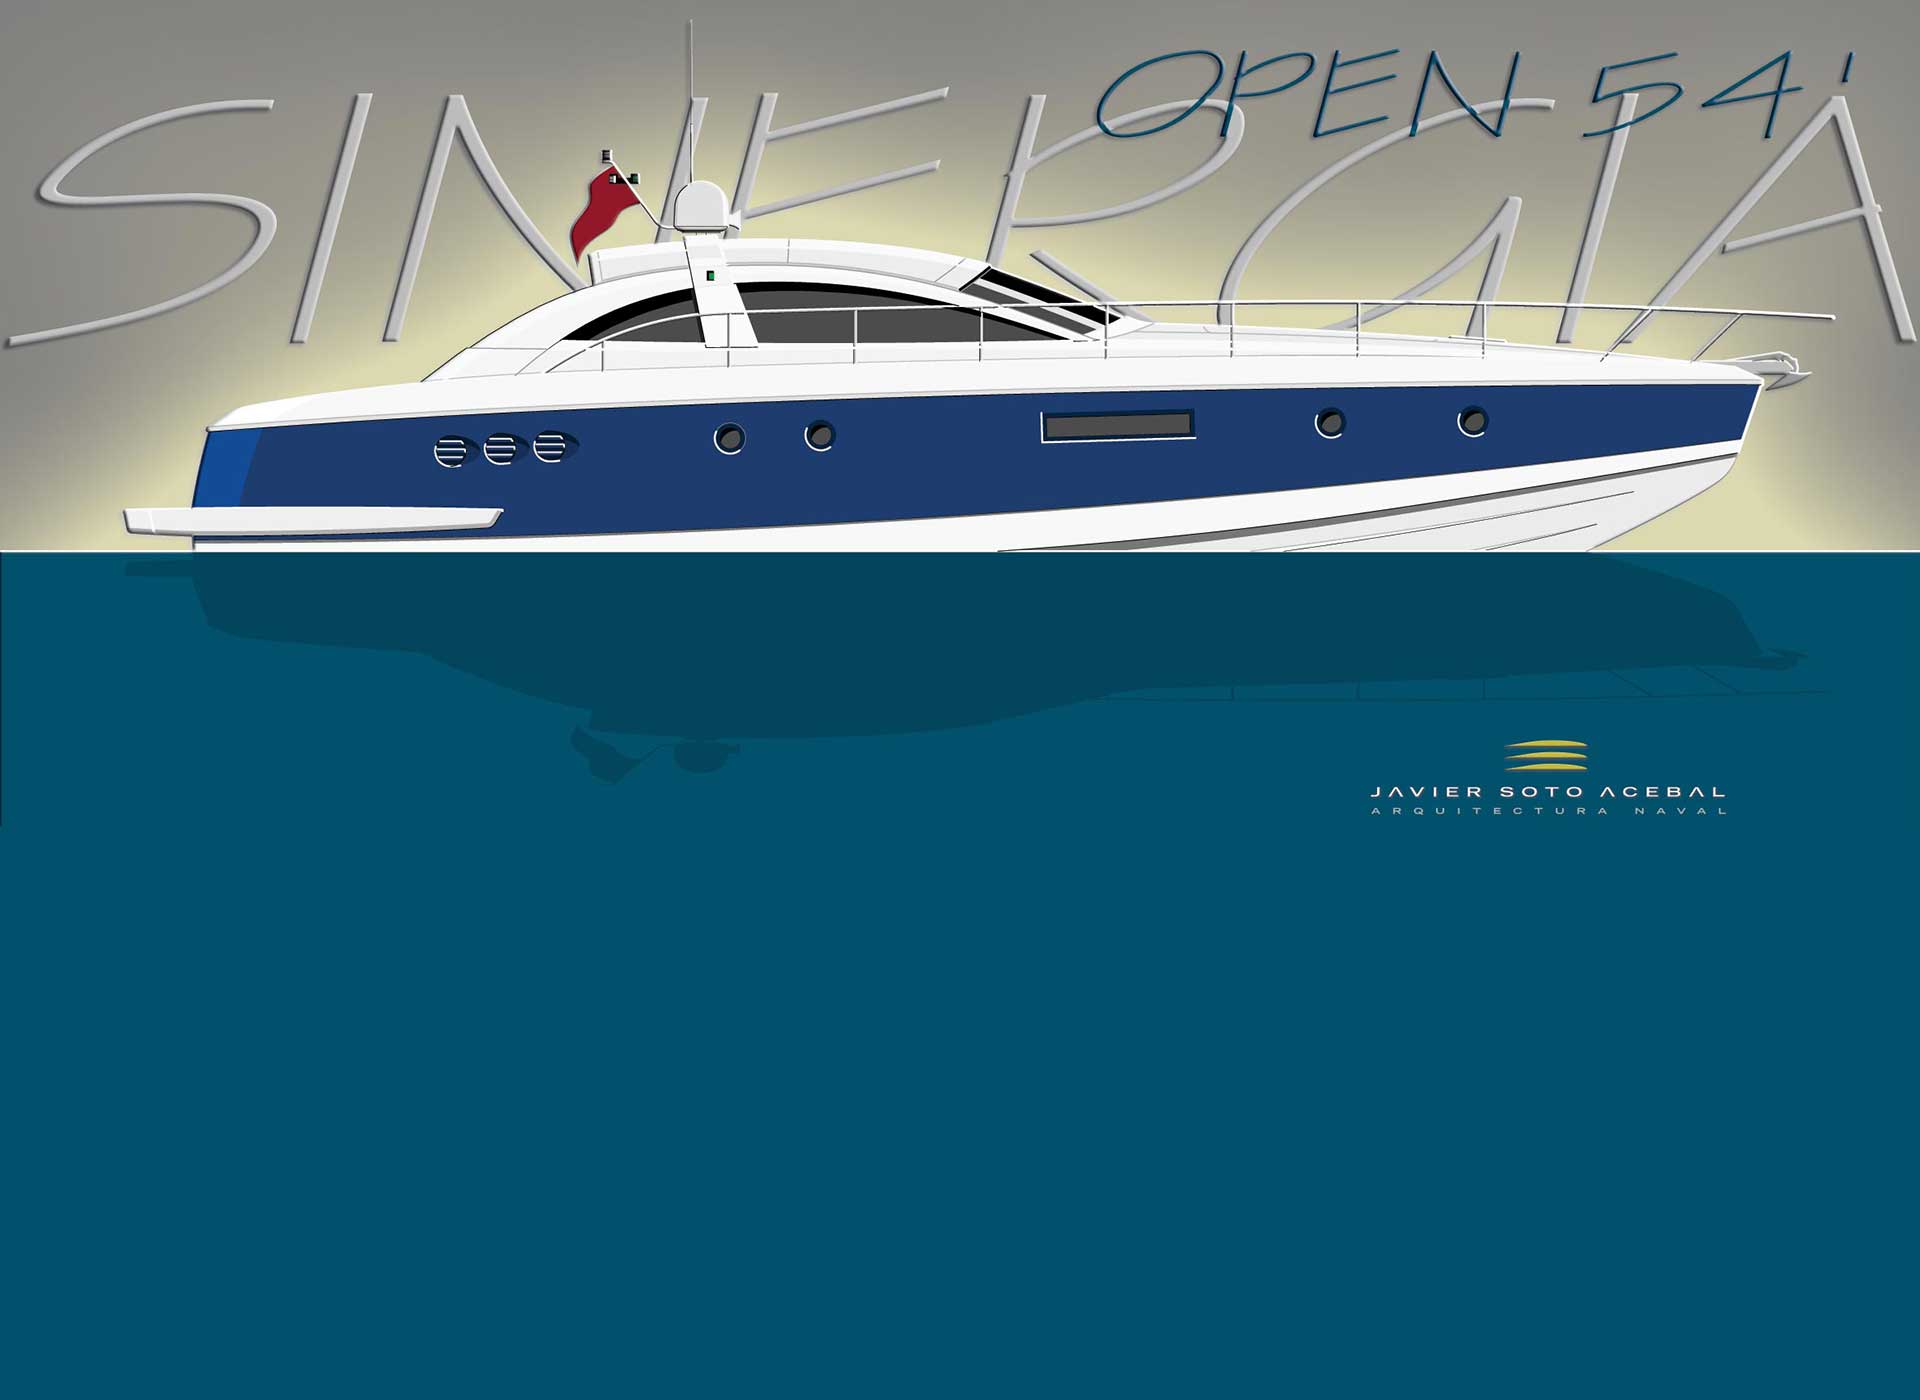 52 Open Motorboat